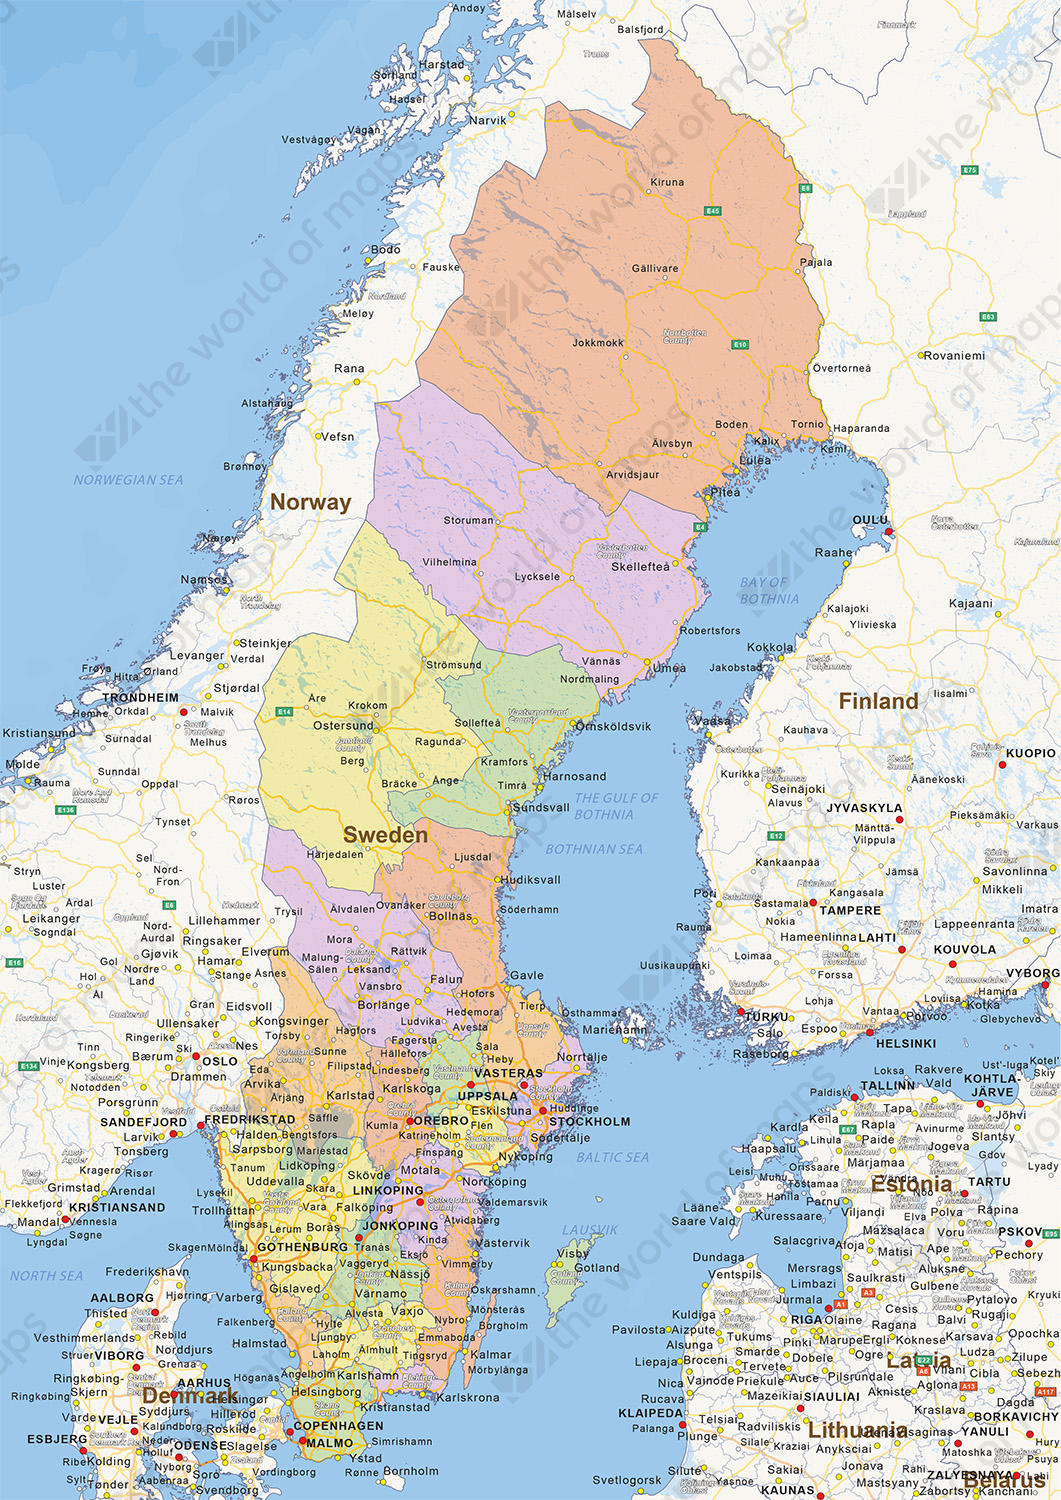 Digital political map of Sweden 